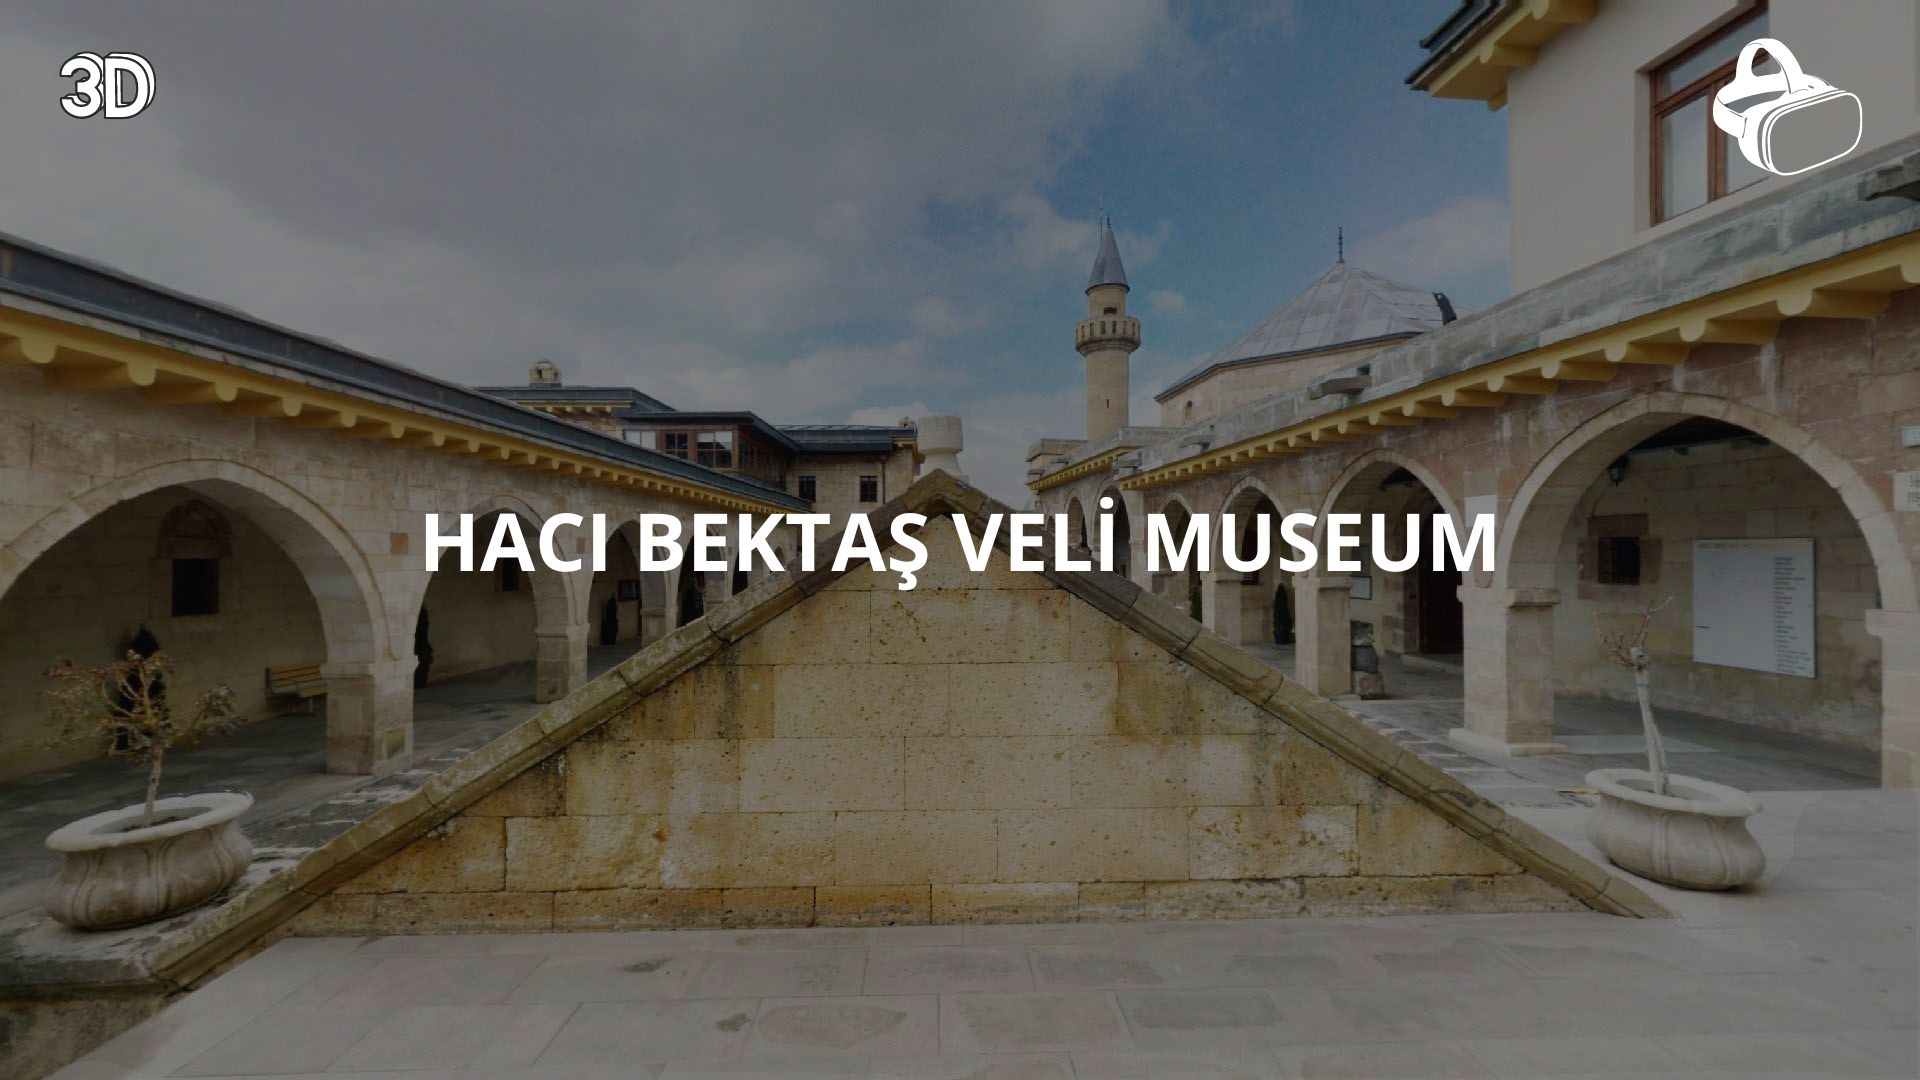 Hacı Bektaş Veli Museum